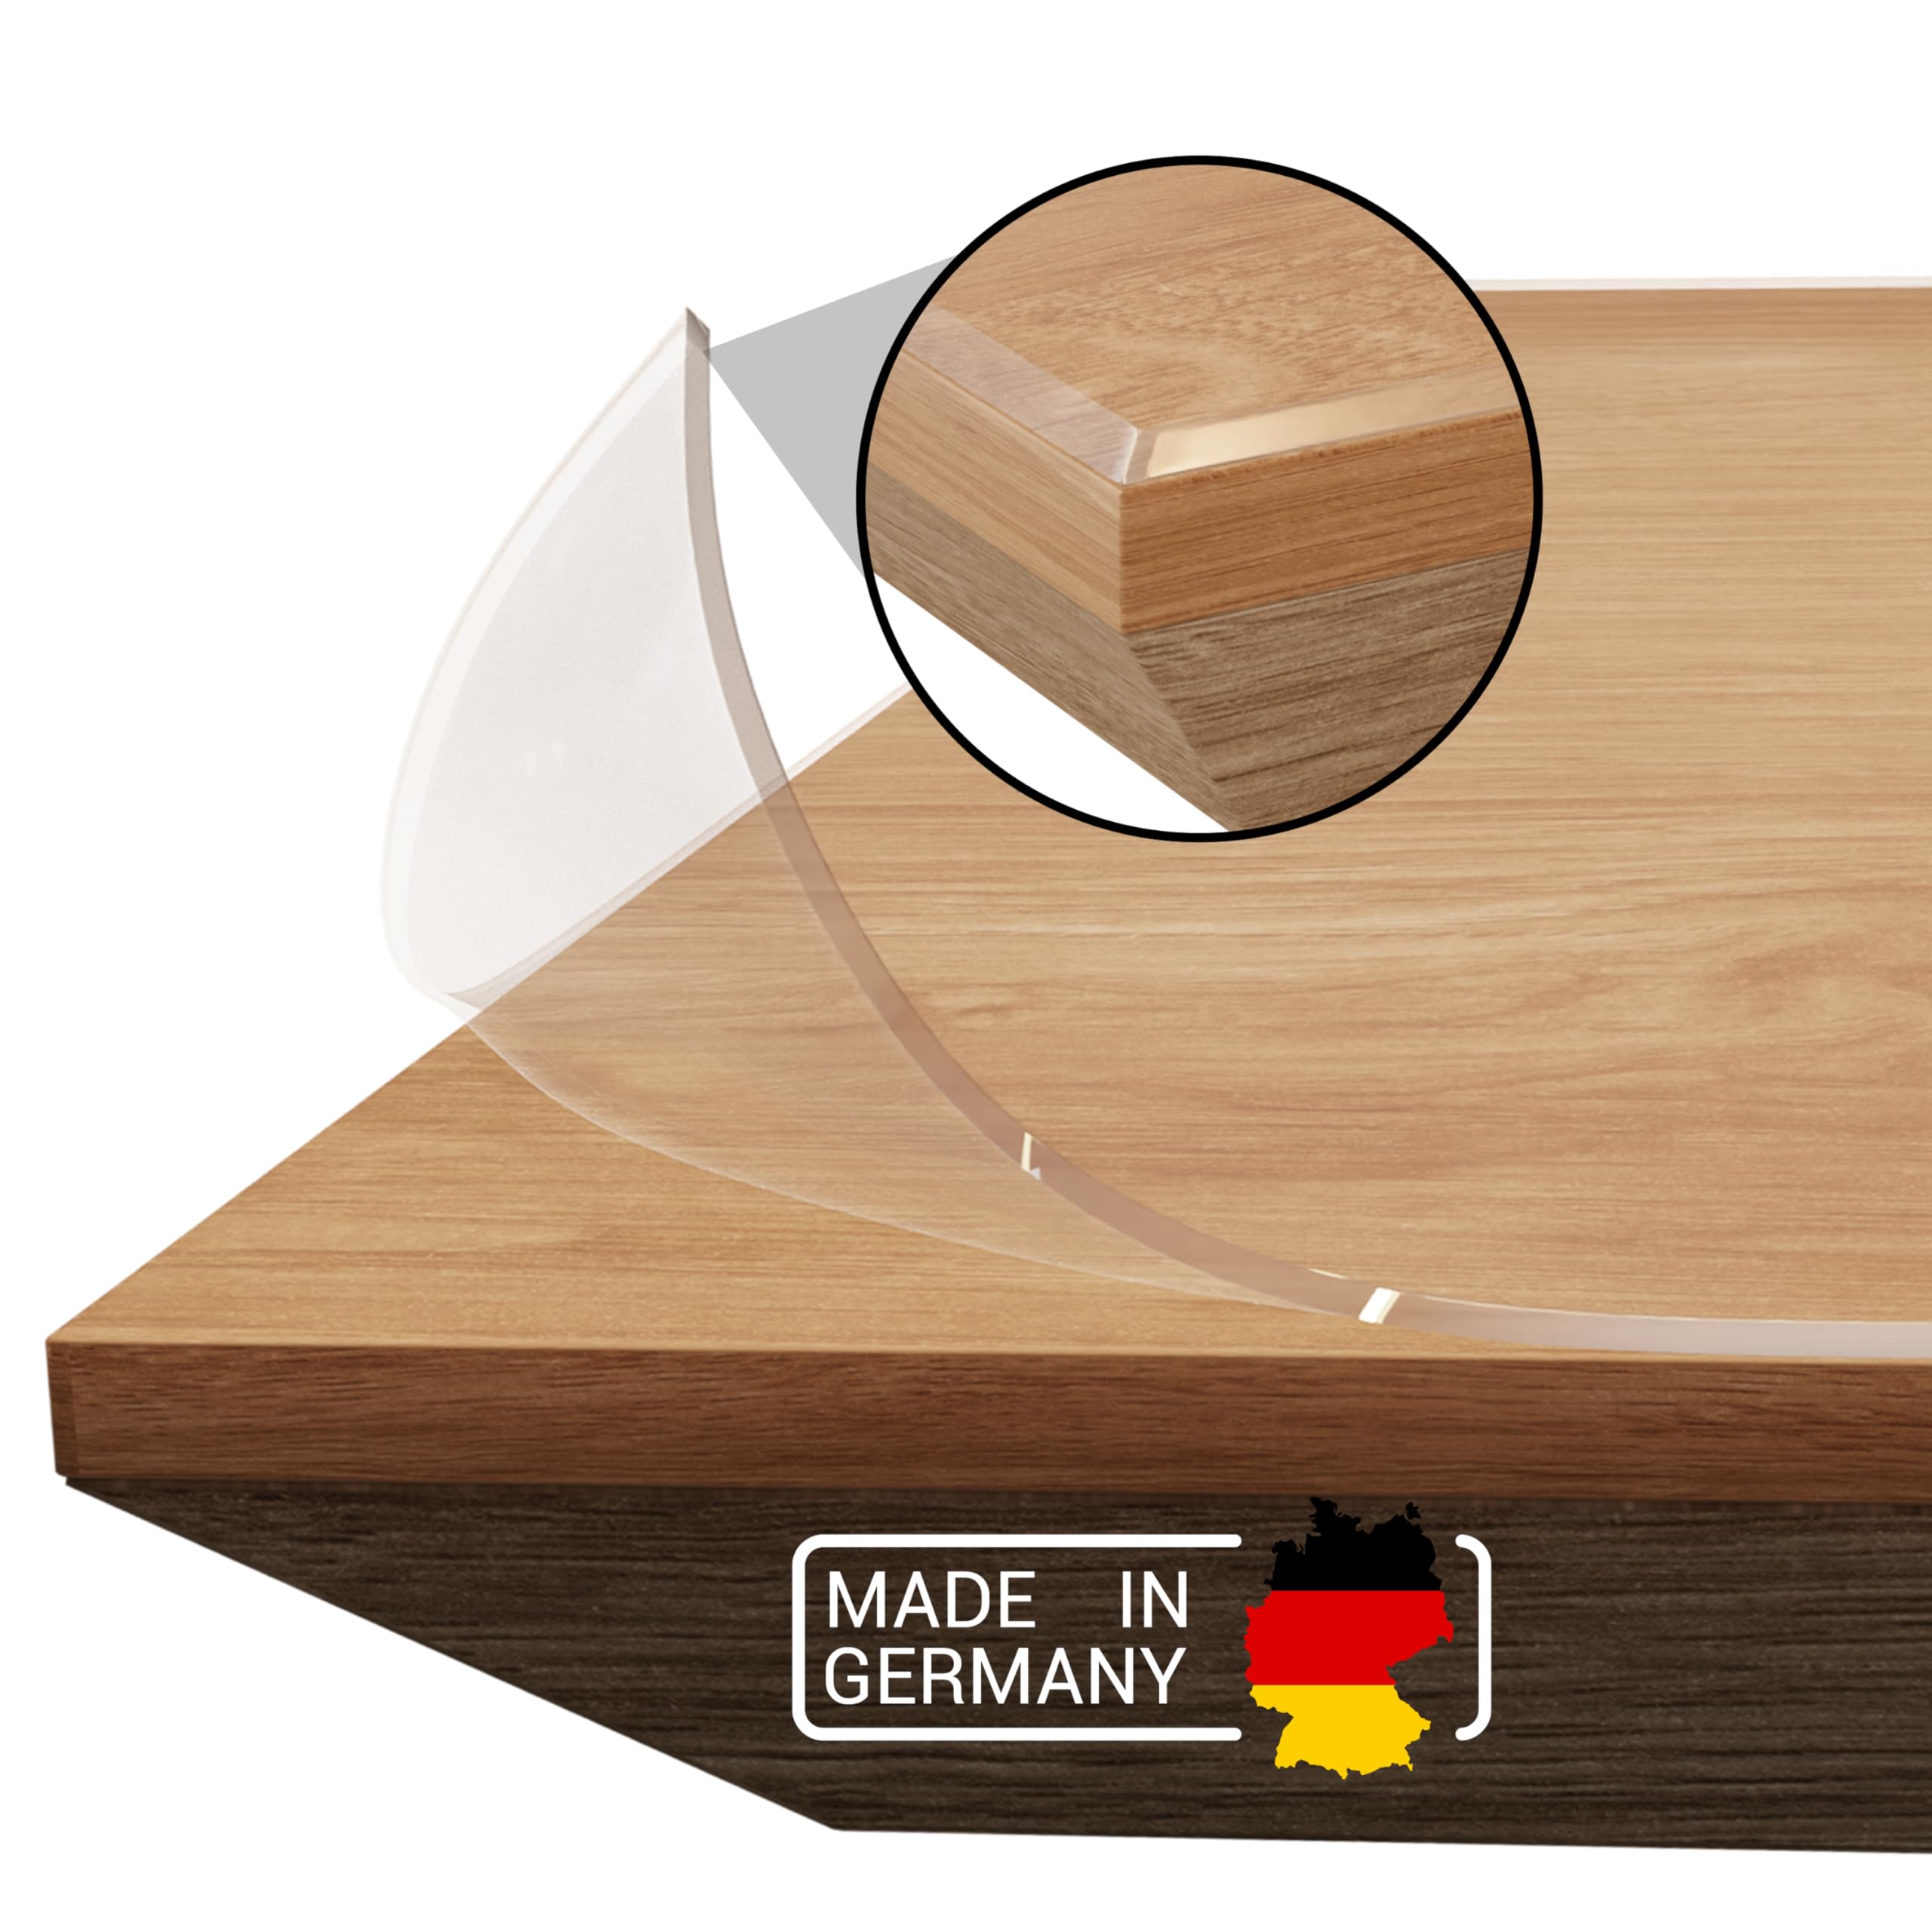 Domar - Tischfolie transparent 2mm nach maß - Made in Germany I Glasklare Tischdecke transparent mit abgeschrägter Kante I Zuverlässiger Tischschutz transparent für optimalen Schutz (90x215cm)